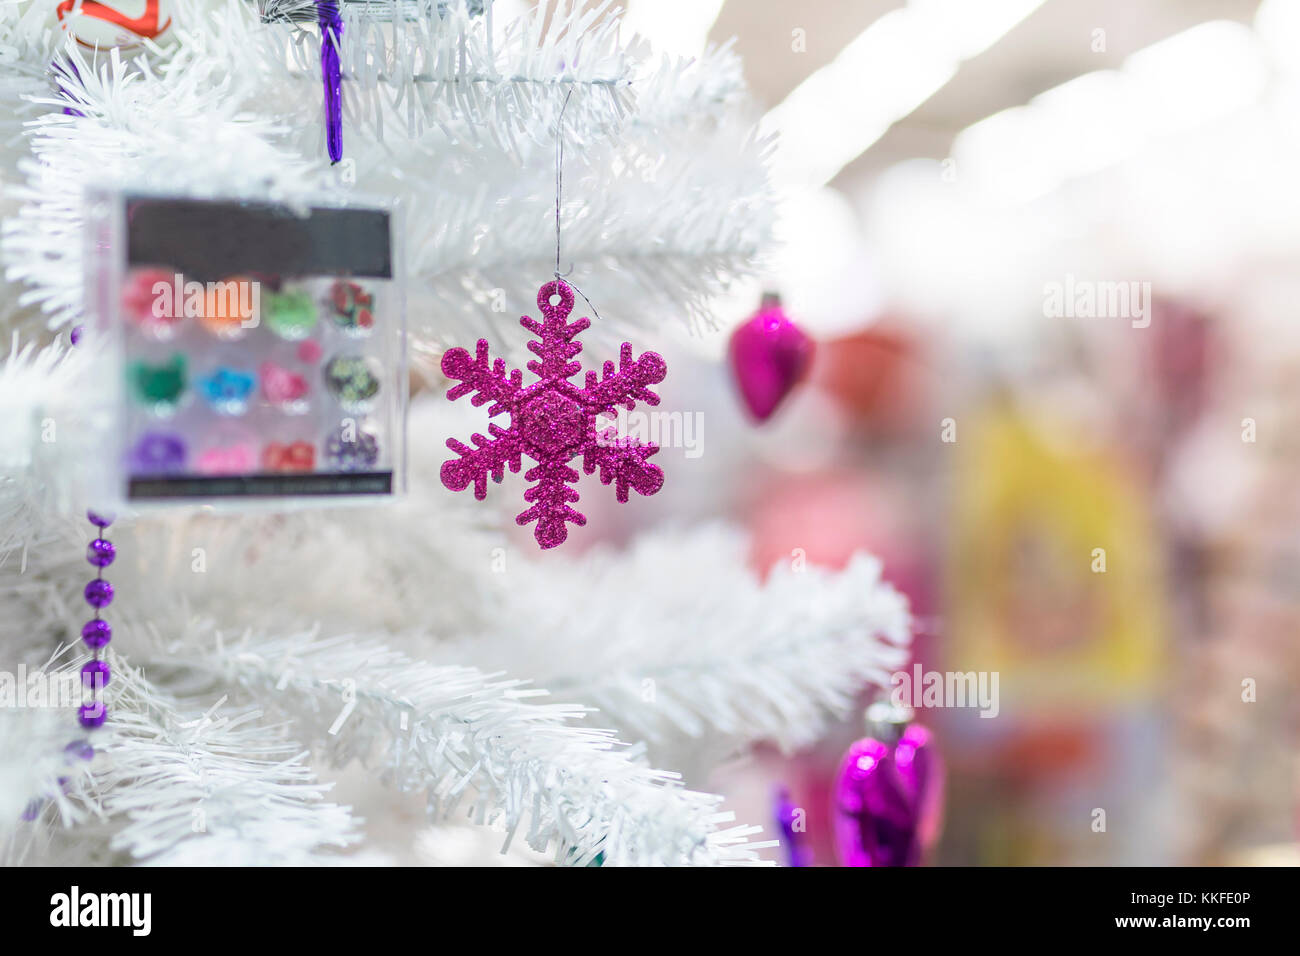 Snowflak pourpre décorations babiole et accroché à un arbre de Noël blanc dans la vitrine d'un magasin du centre commercial au Royaume-Uni Banque D'Images